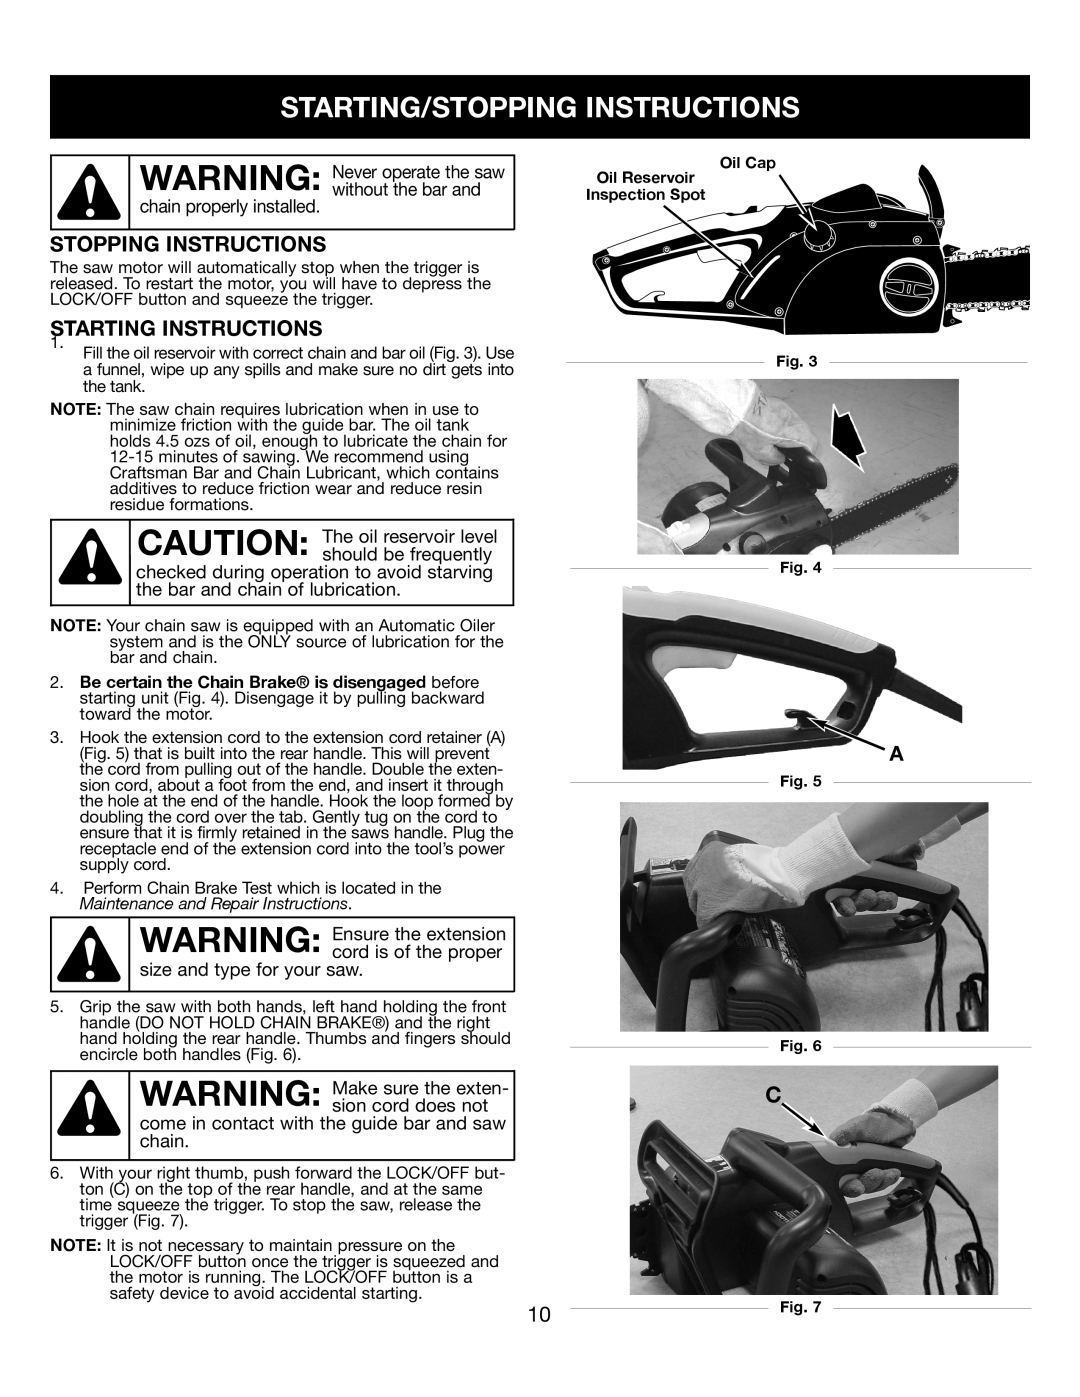 Craftsman 316.34107 manual Starting/Stopping Instructions, Starting Instructions, WARNING Never operate the saw 